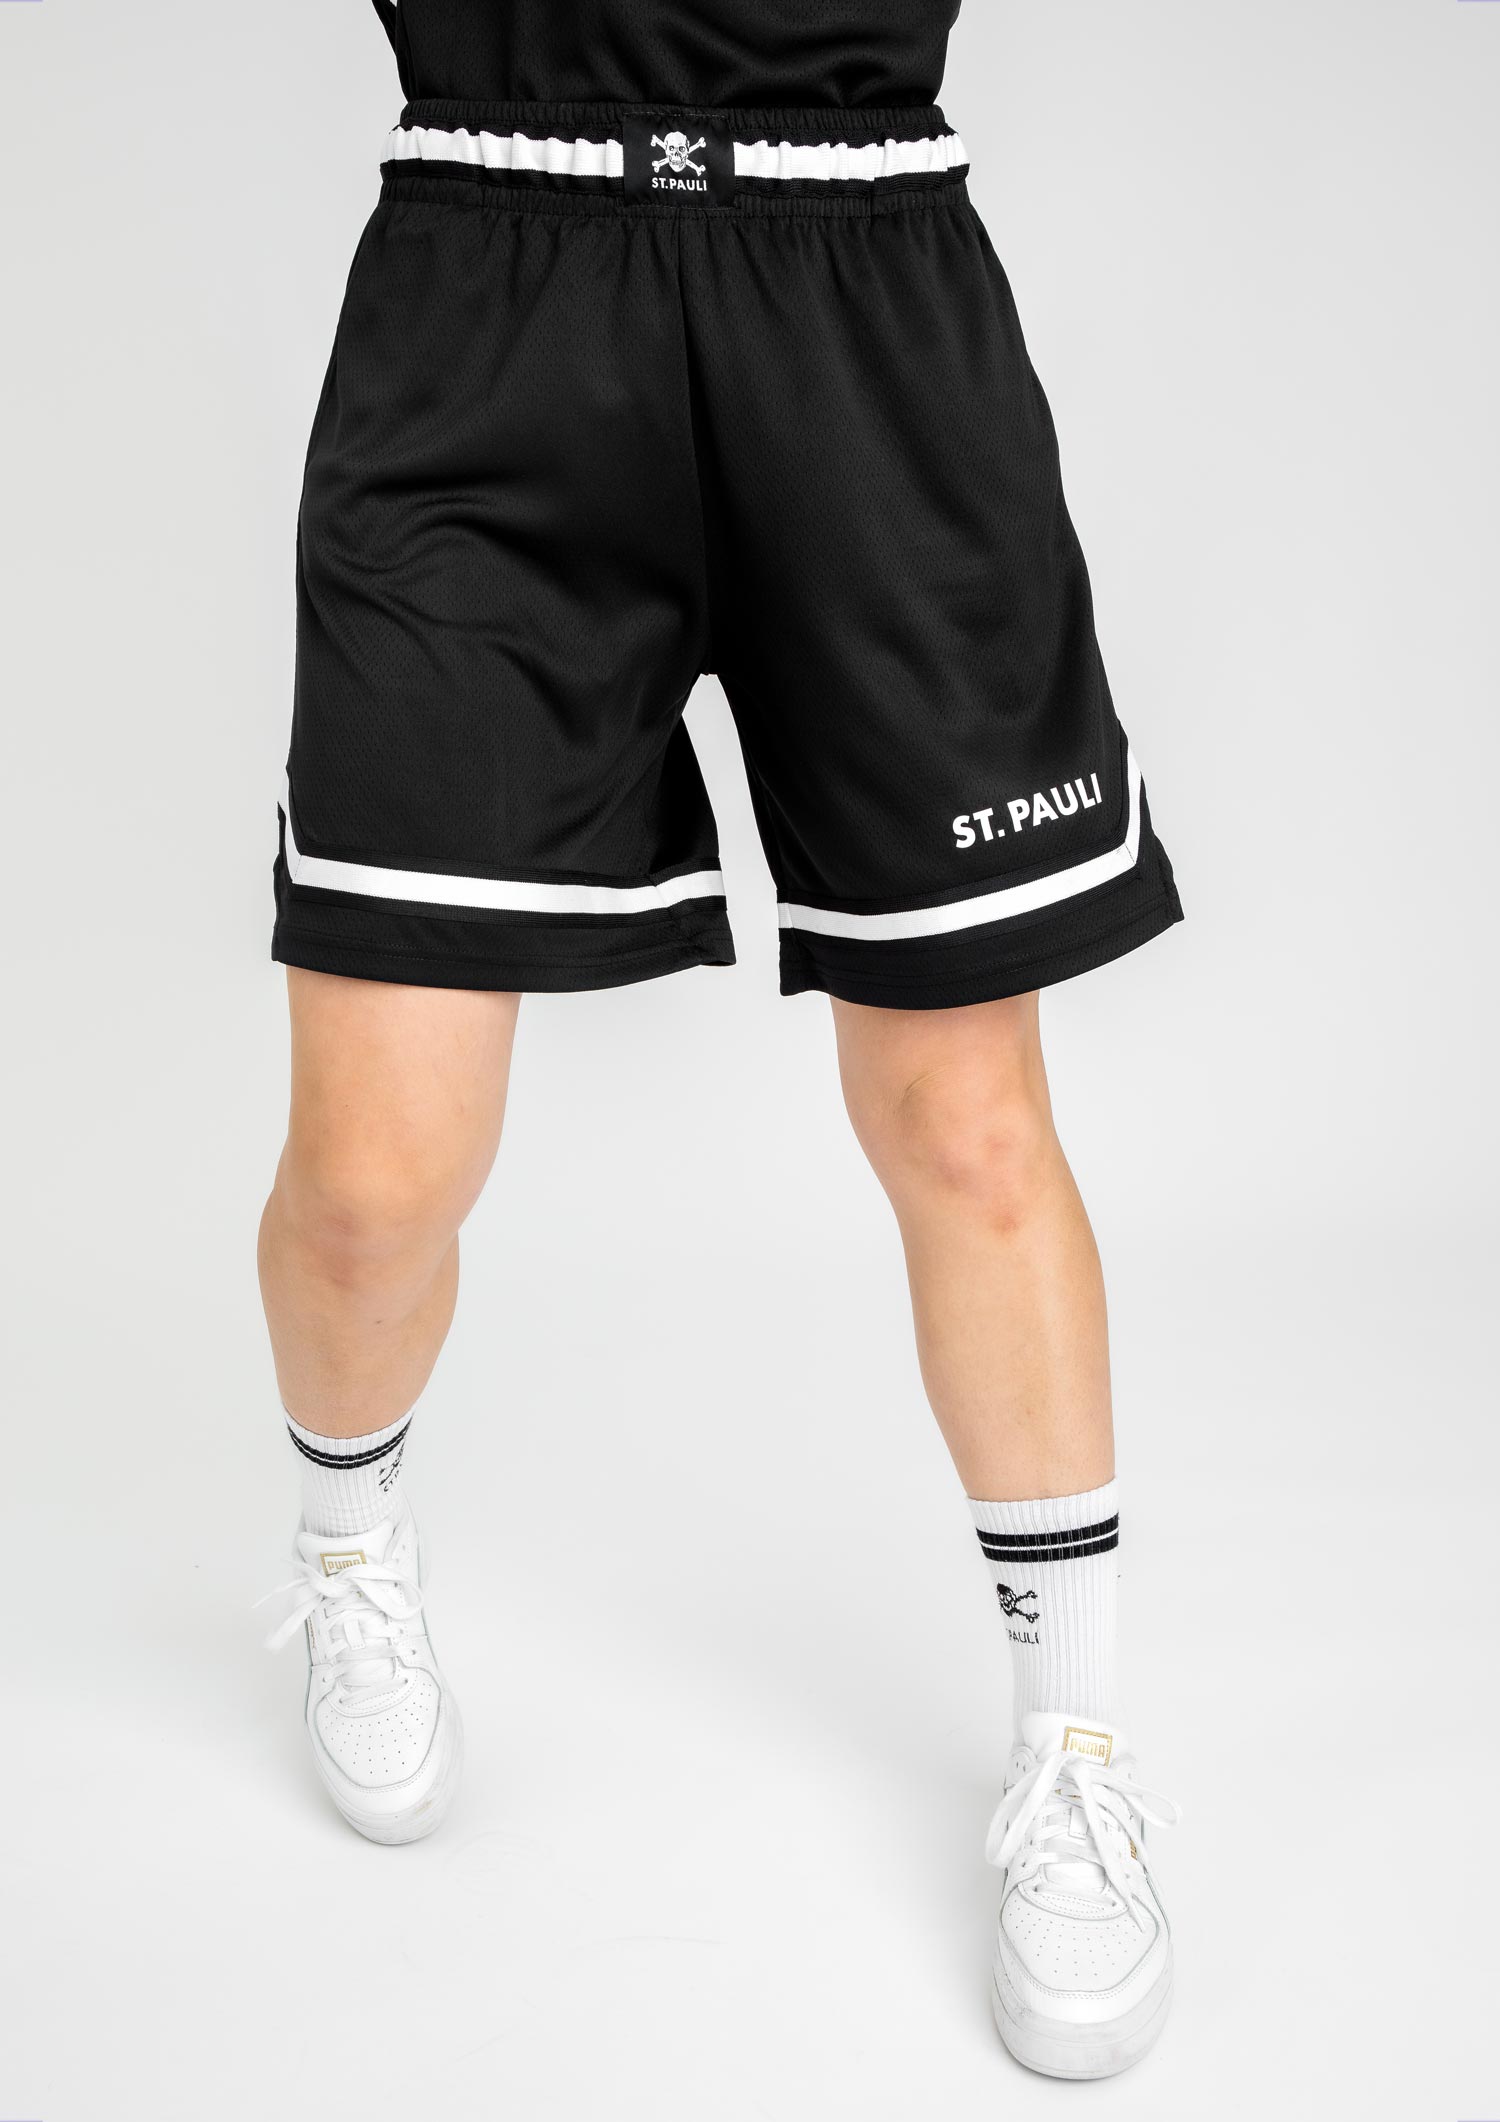 Basketball shorts skull & crossbones black